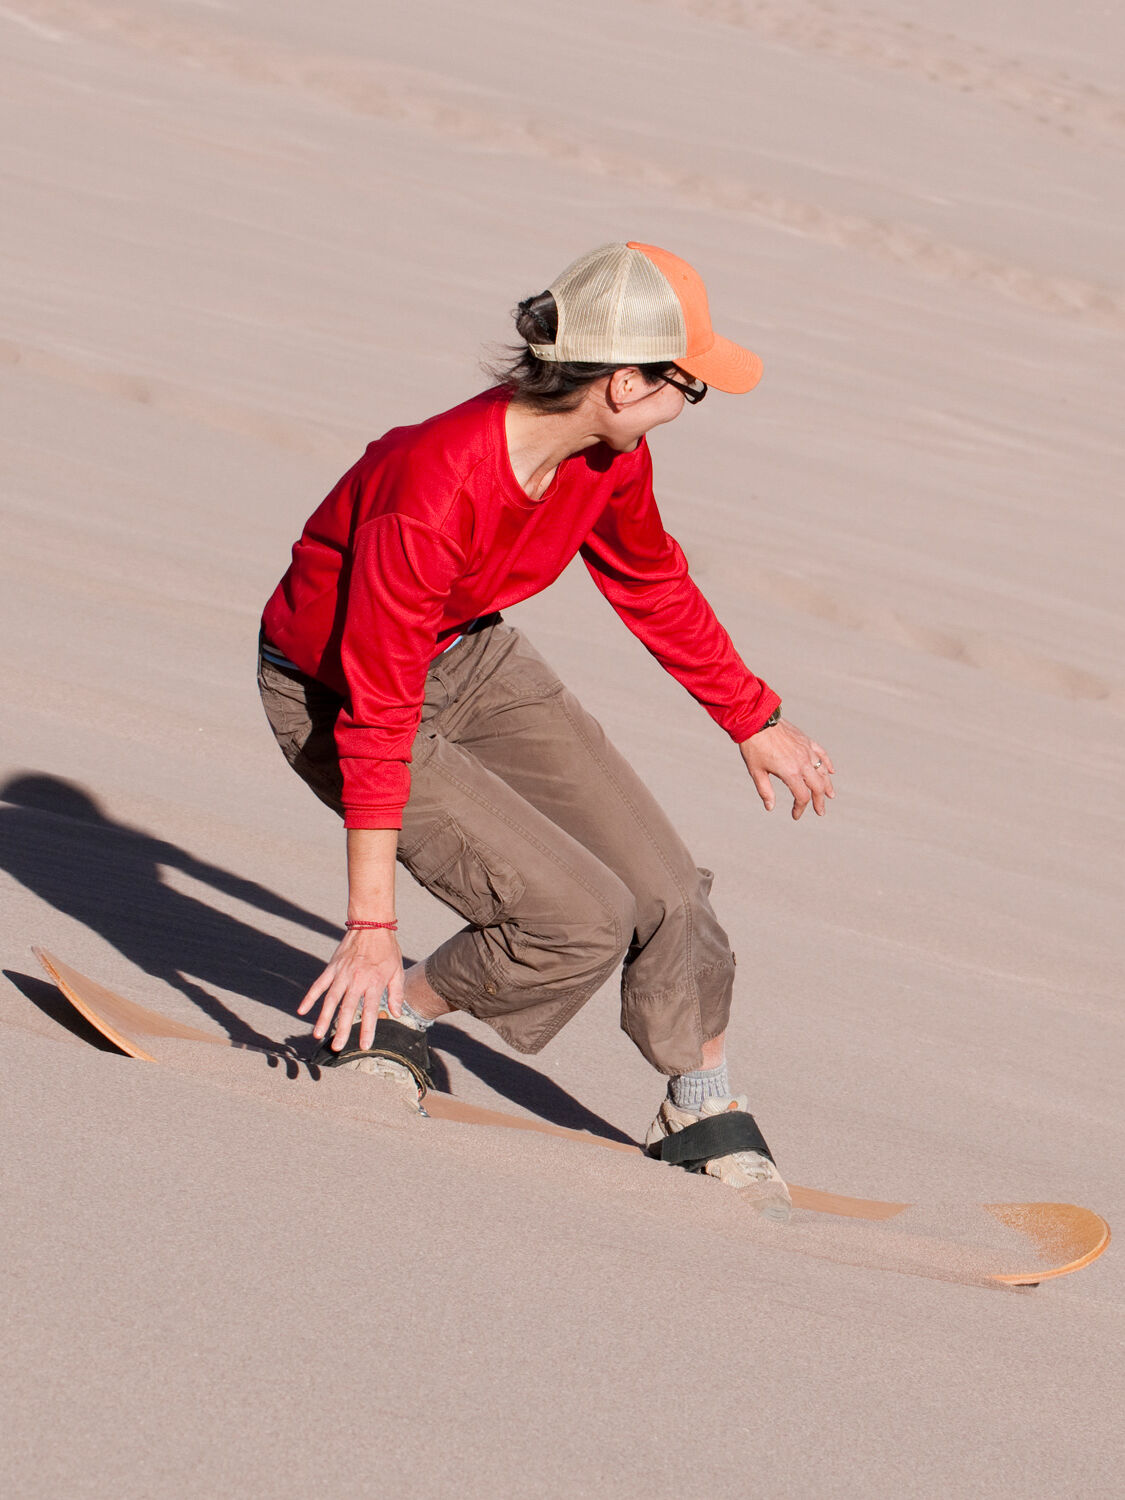 砂丘の上を爽快に滑走！ サンドボード・サンドスライダー体験